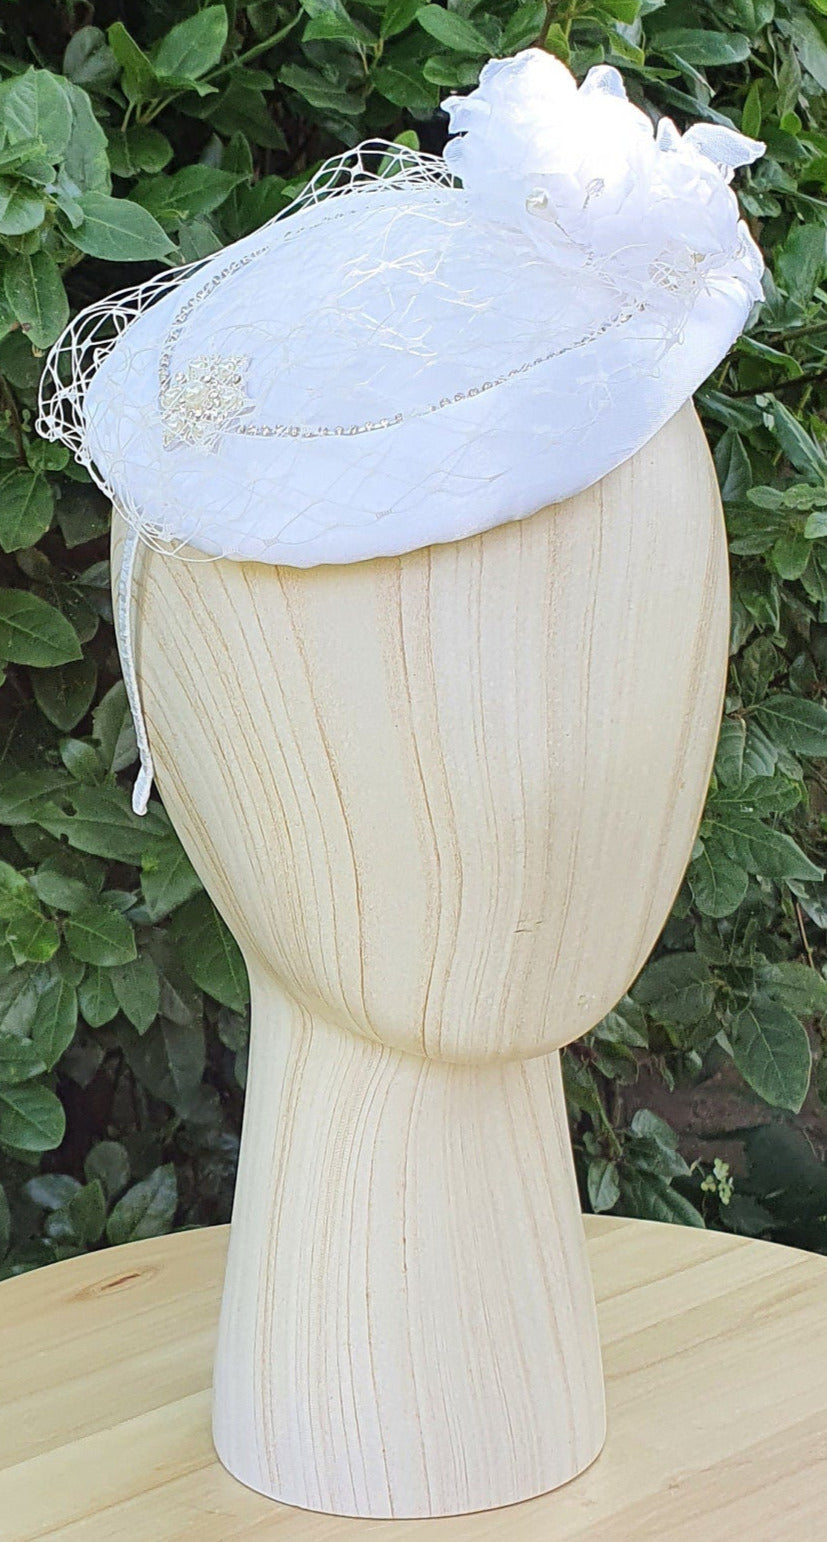 Handgemaakte ronde witte/  fascinator millinery van bloem  met zijde , kant  sluier, satijnen stof, parels,   broche met parels en steentjes